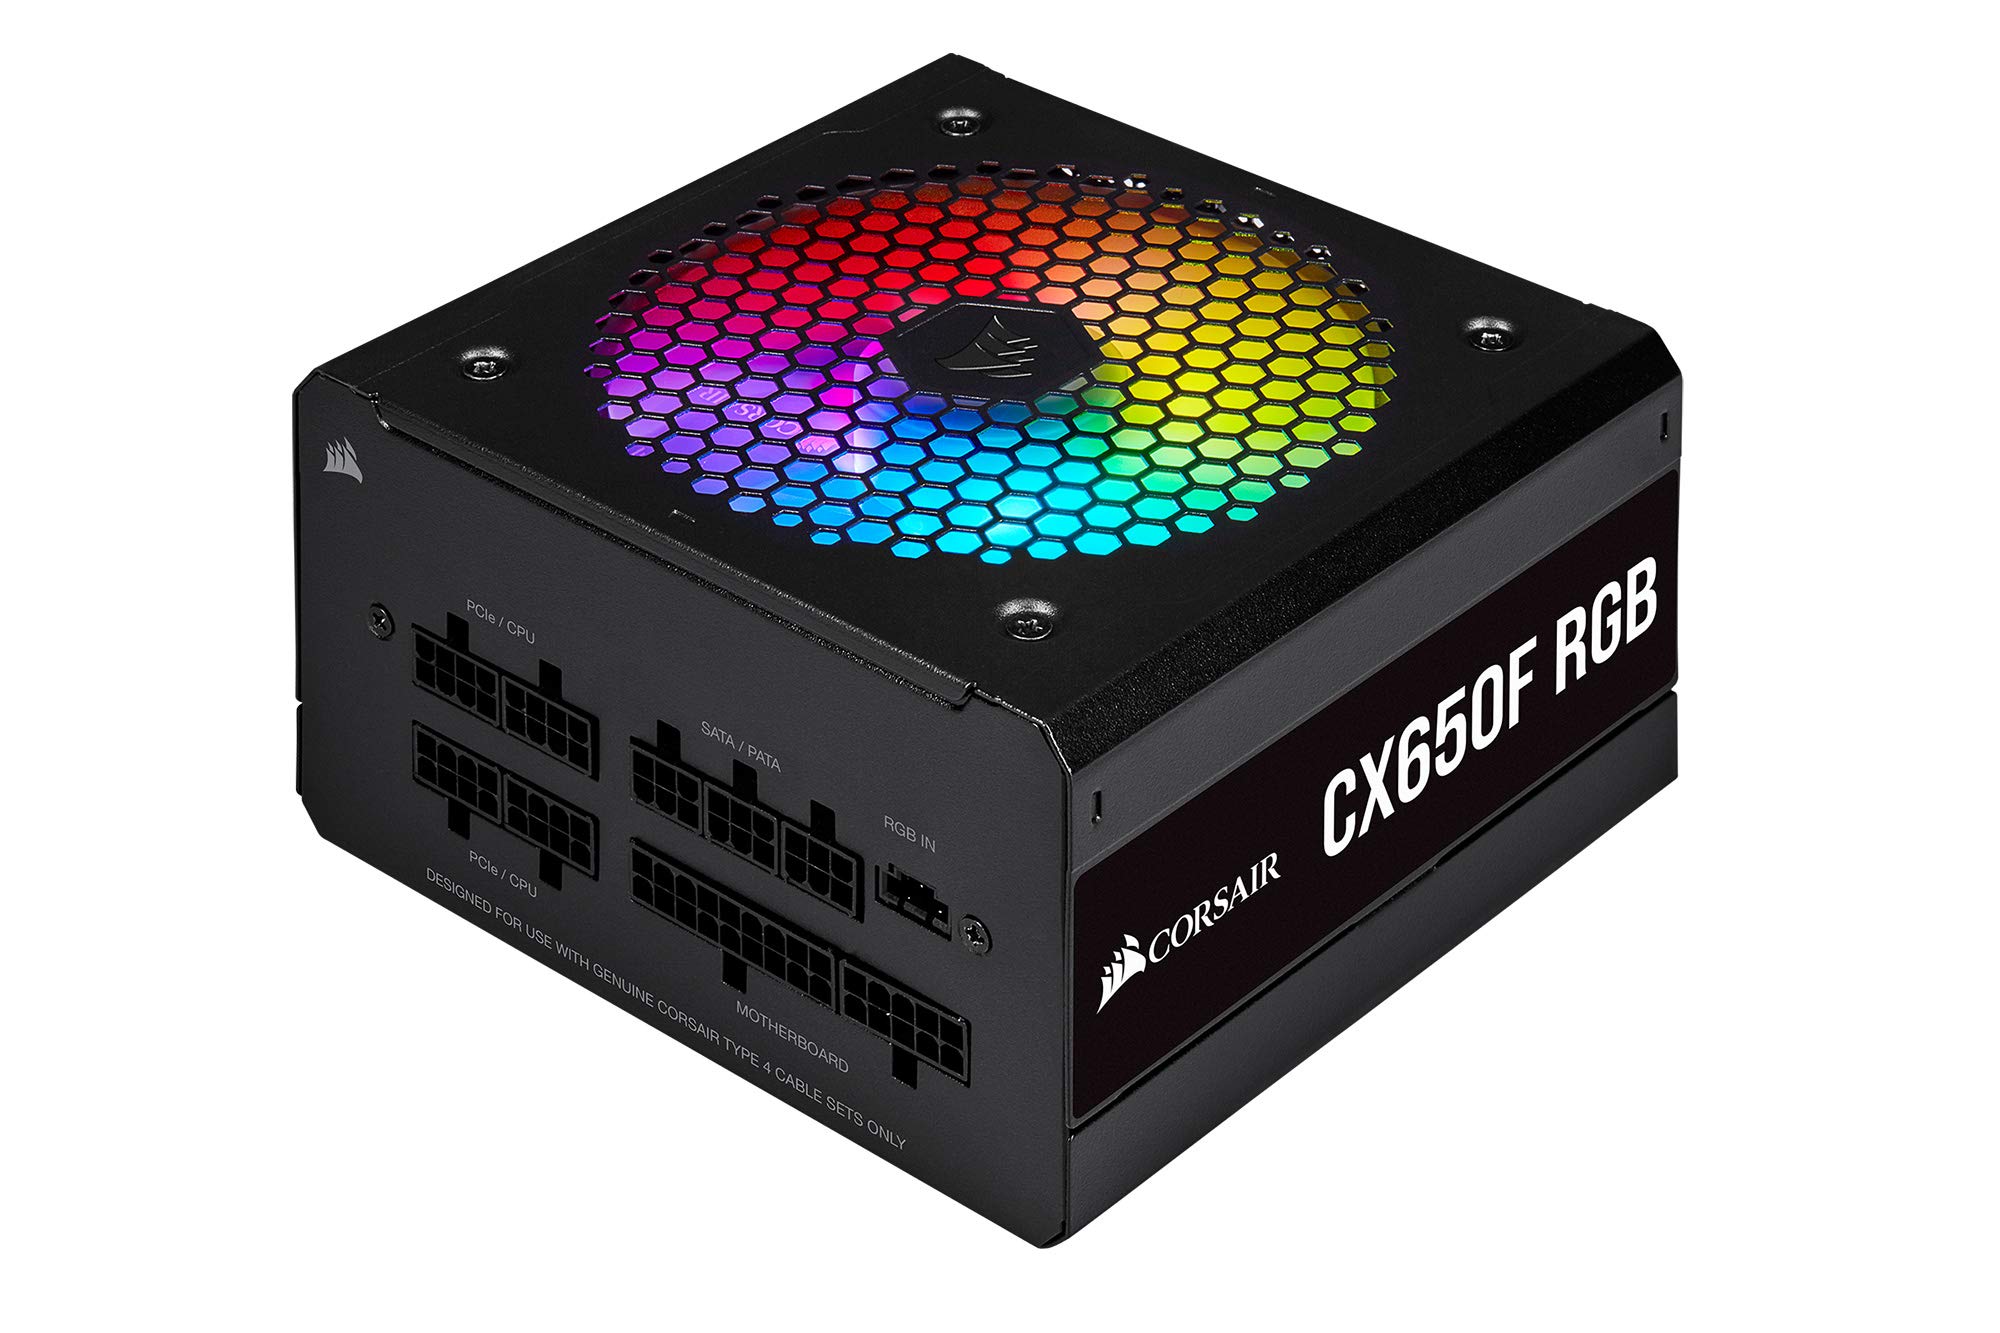 CP-9020217-JP ［CX650F RGB Black 650W］の商品画像